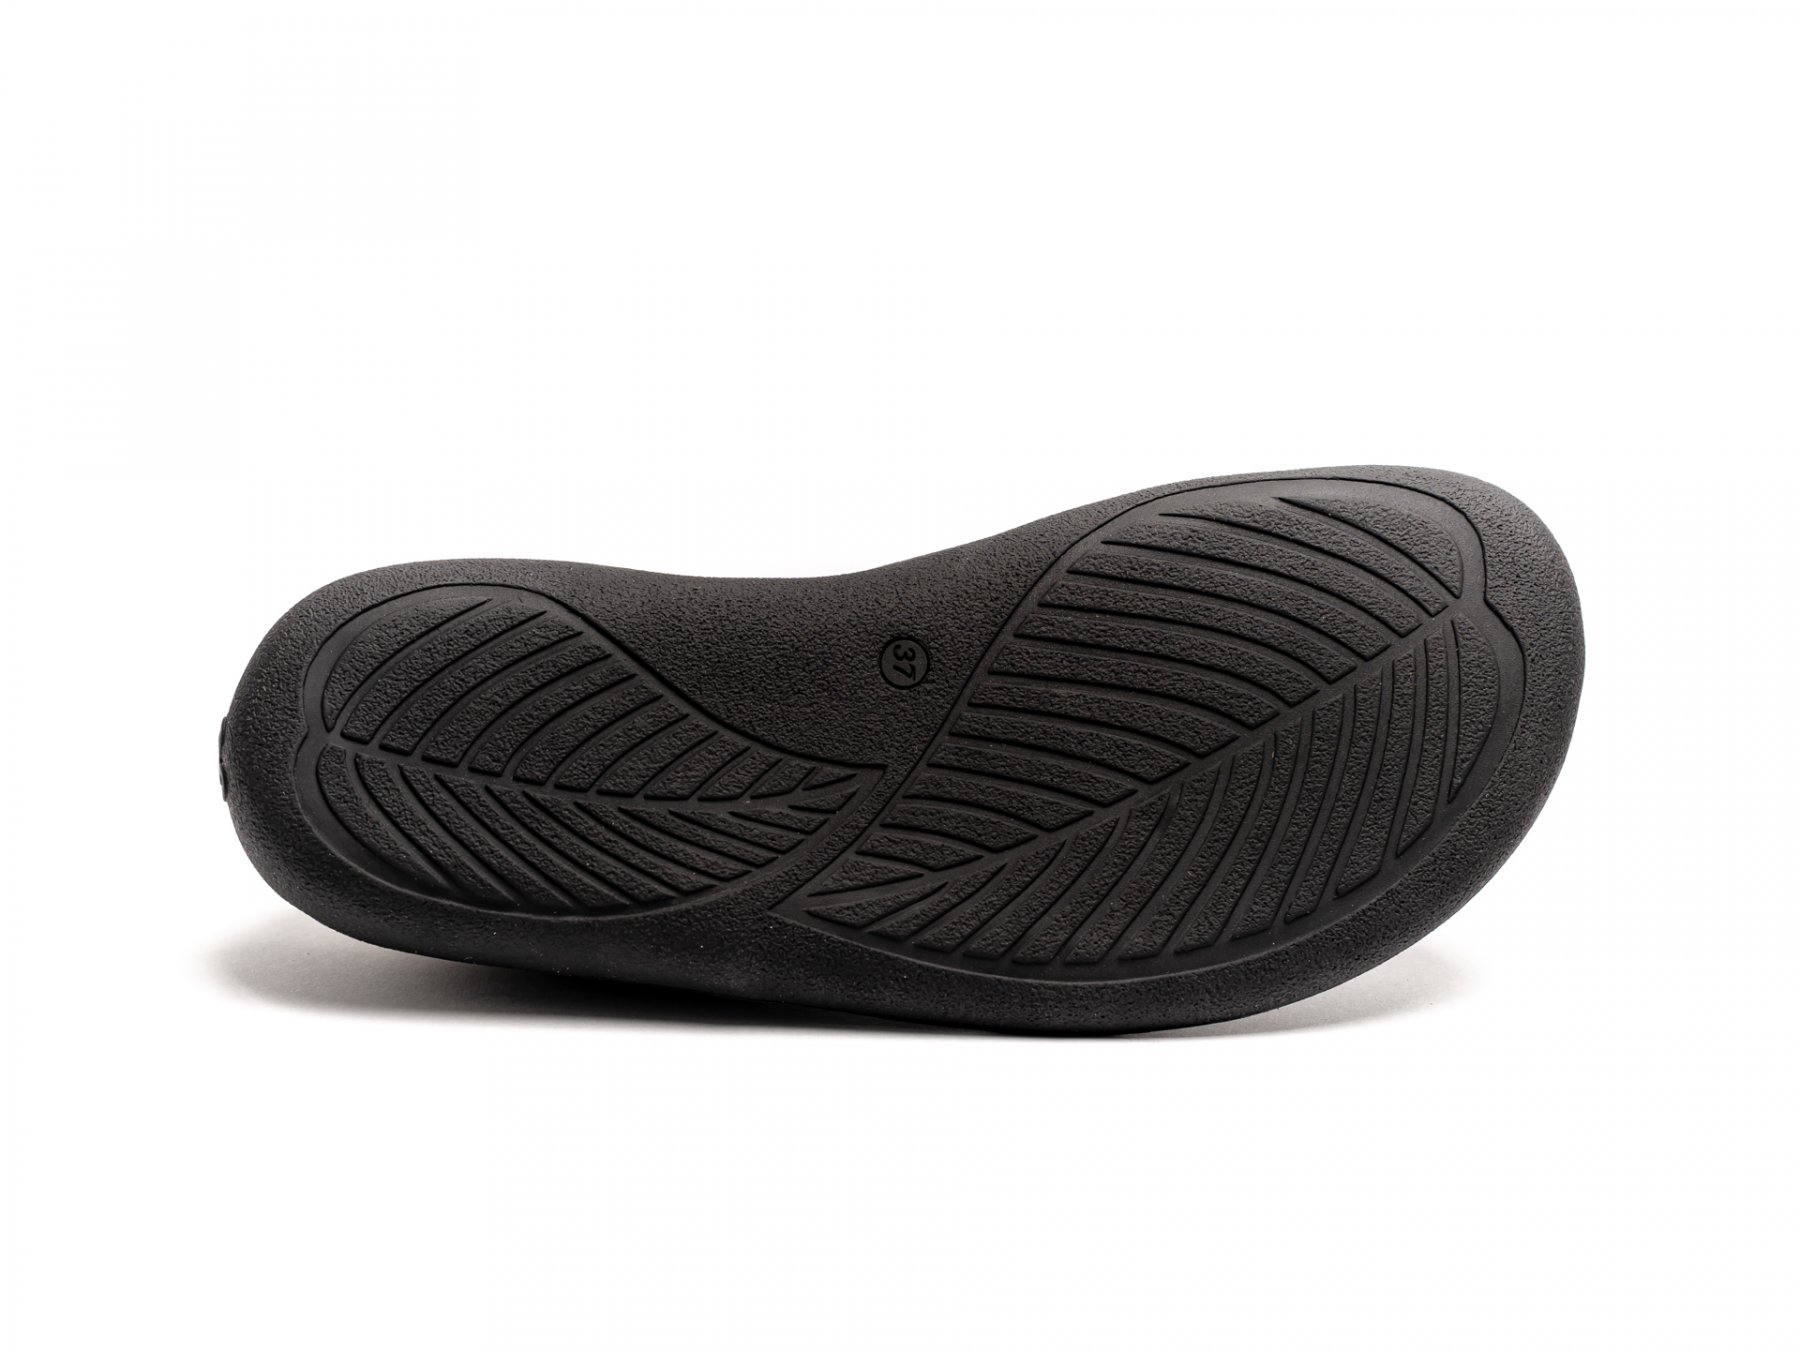 Barefoot Sneakers - Be Lenka Prime 2.0 - Black | Be Lenka